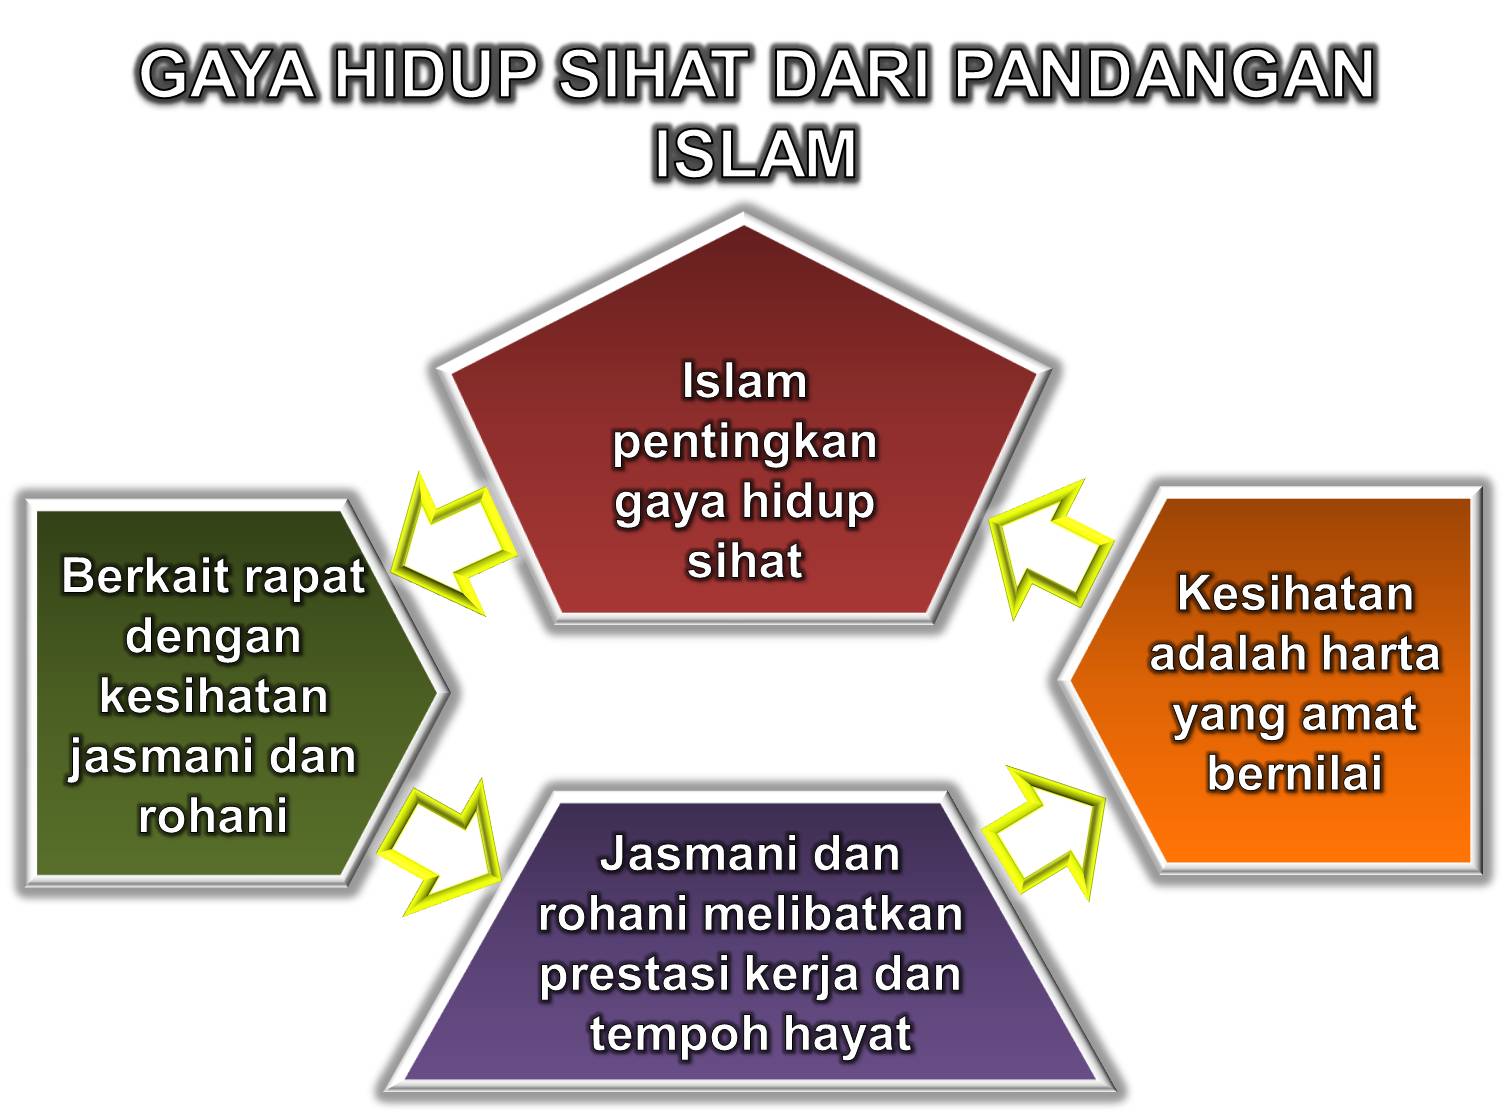 GAYA HIDUP SIHAT MASYARAKAT ISLAM MALAYSIA  mutiaraislam 